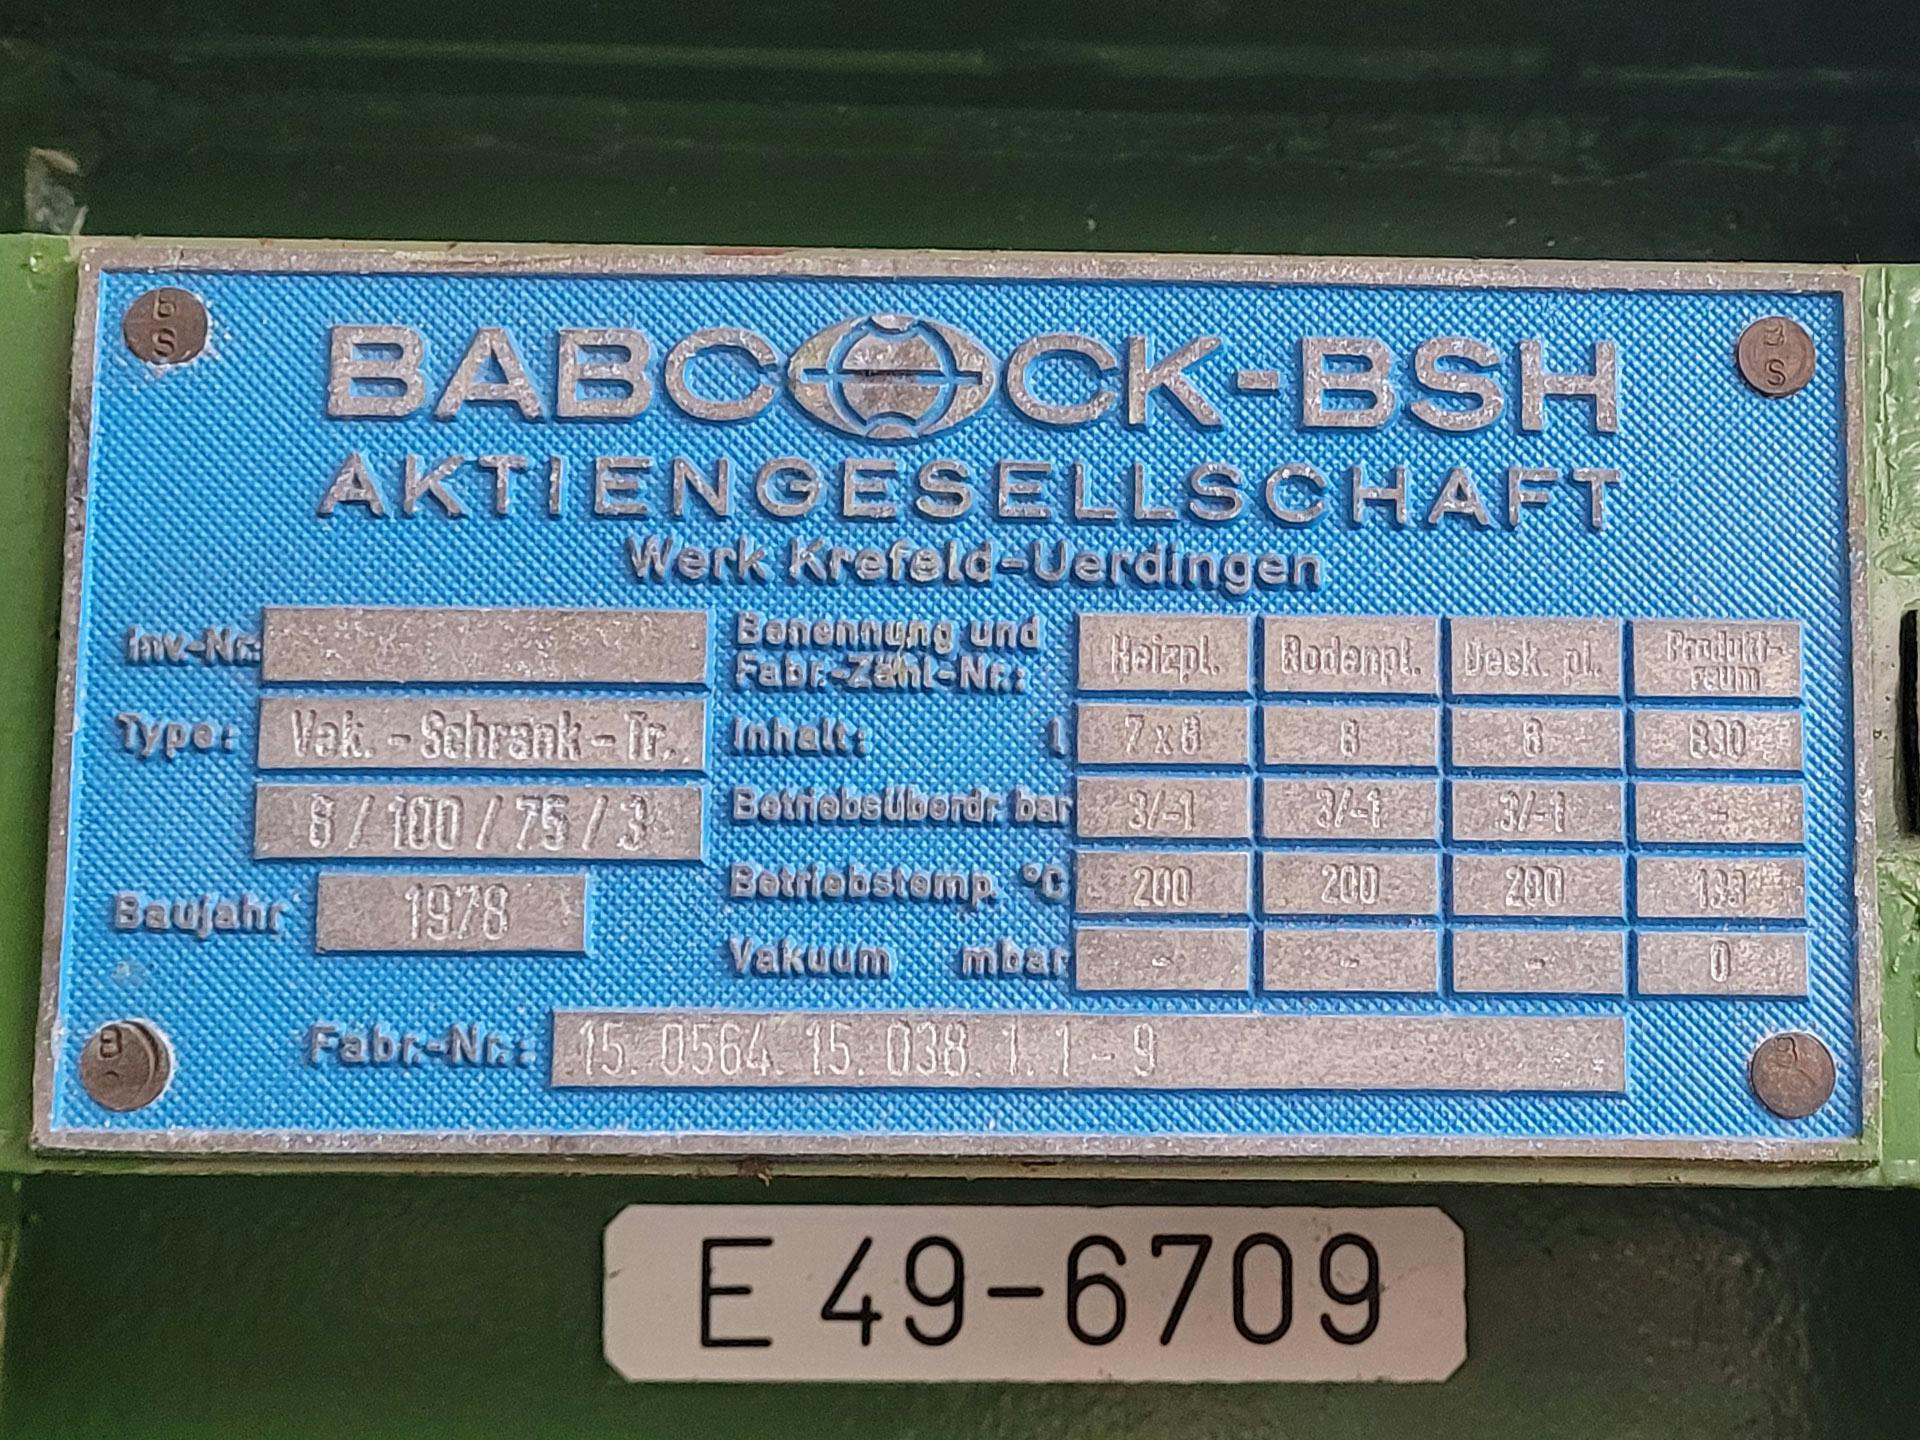 Babcock-BSH 8/100/75-3 - Tácová sušicka - image 4